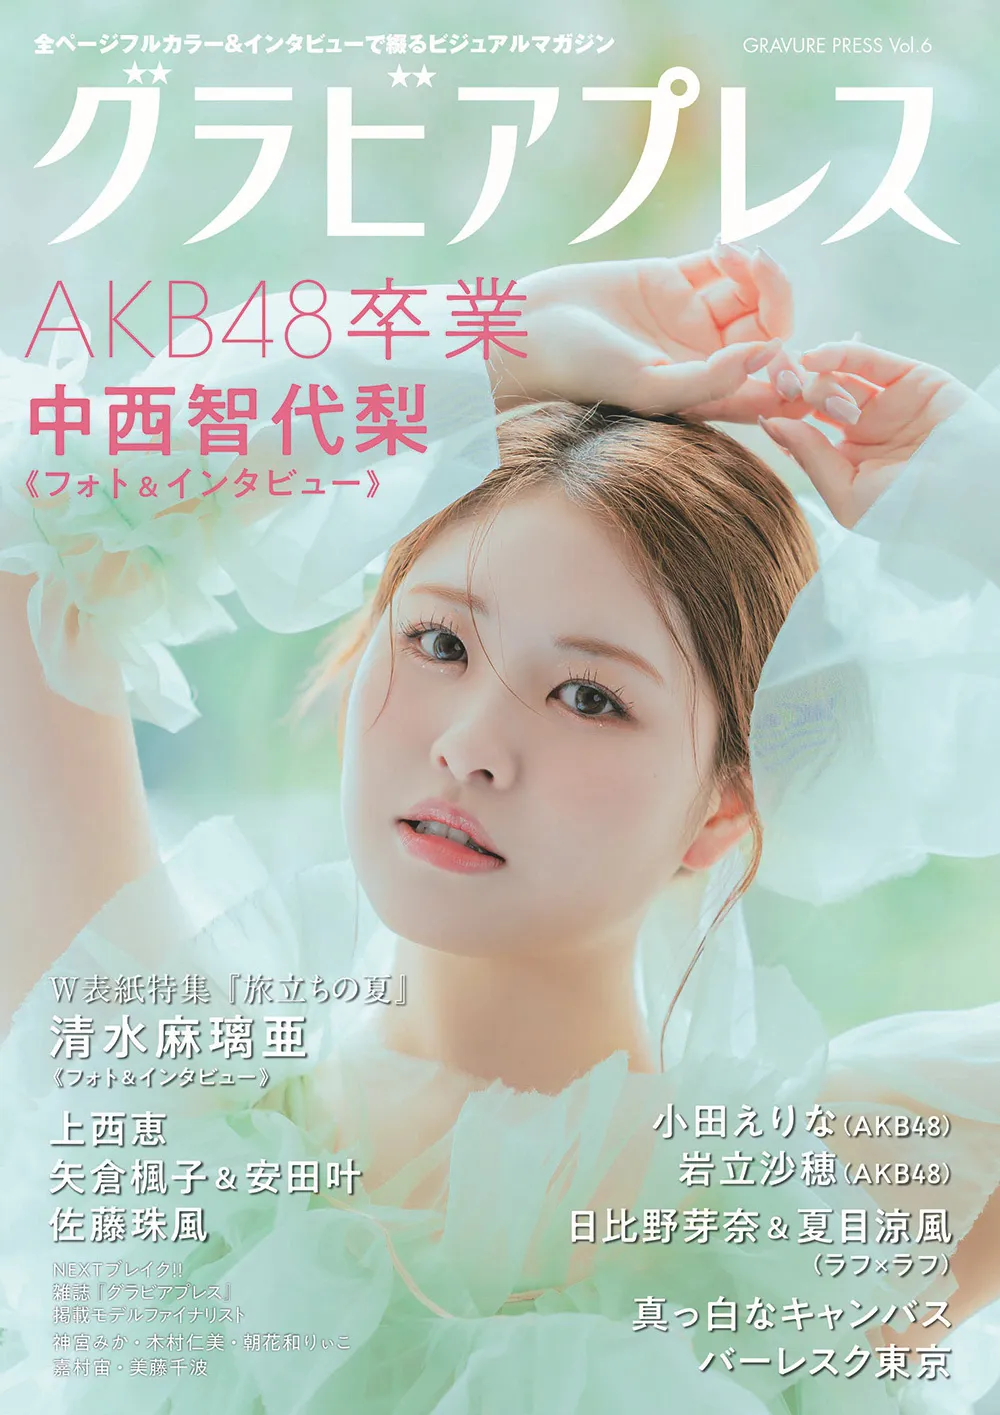 中西智代梨(AKB48)が「グラビアプレス」Vol.6の表紙を飾っている